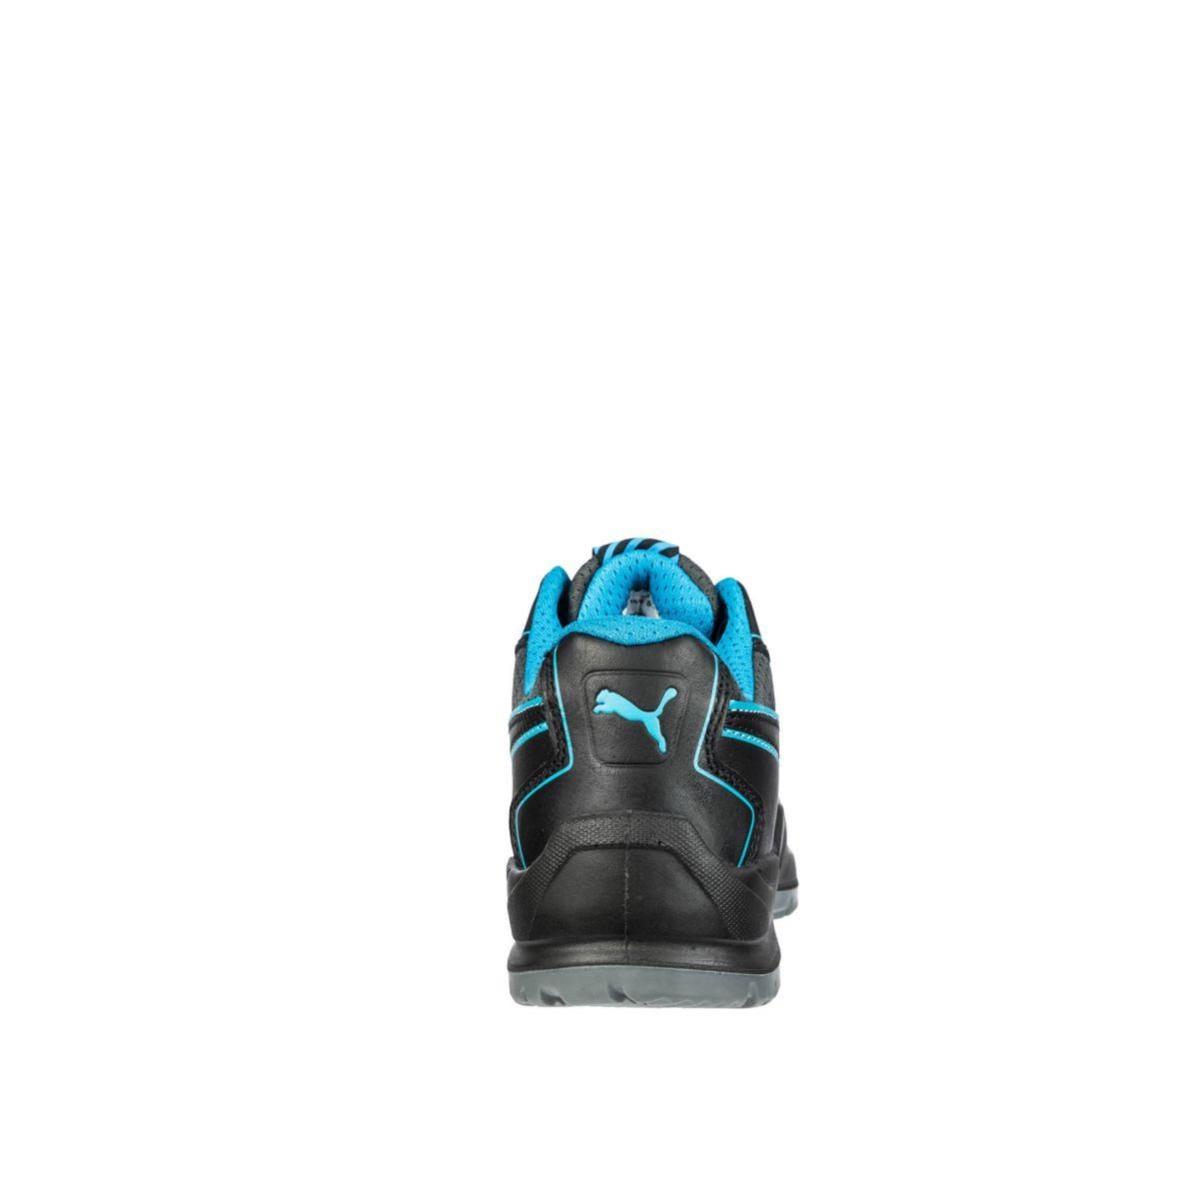 Chaussures de sécurité Niobe low WNS S3 ESD SRC bleu - Puma - Taille 37 1